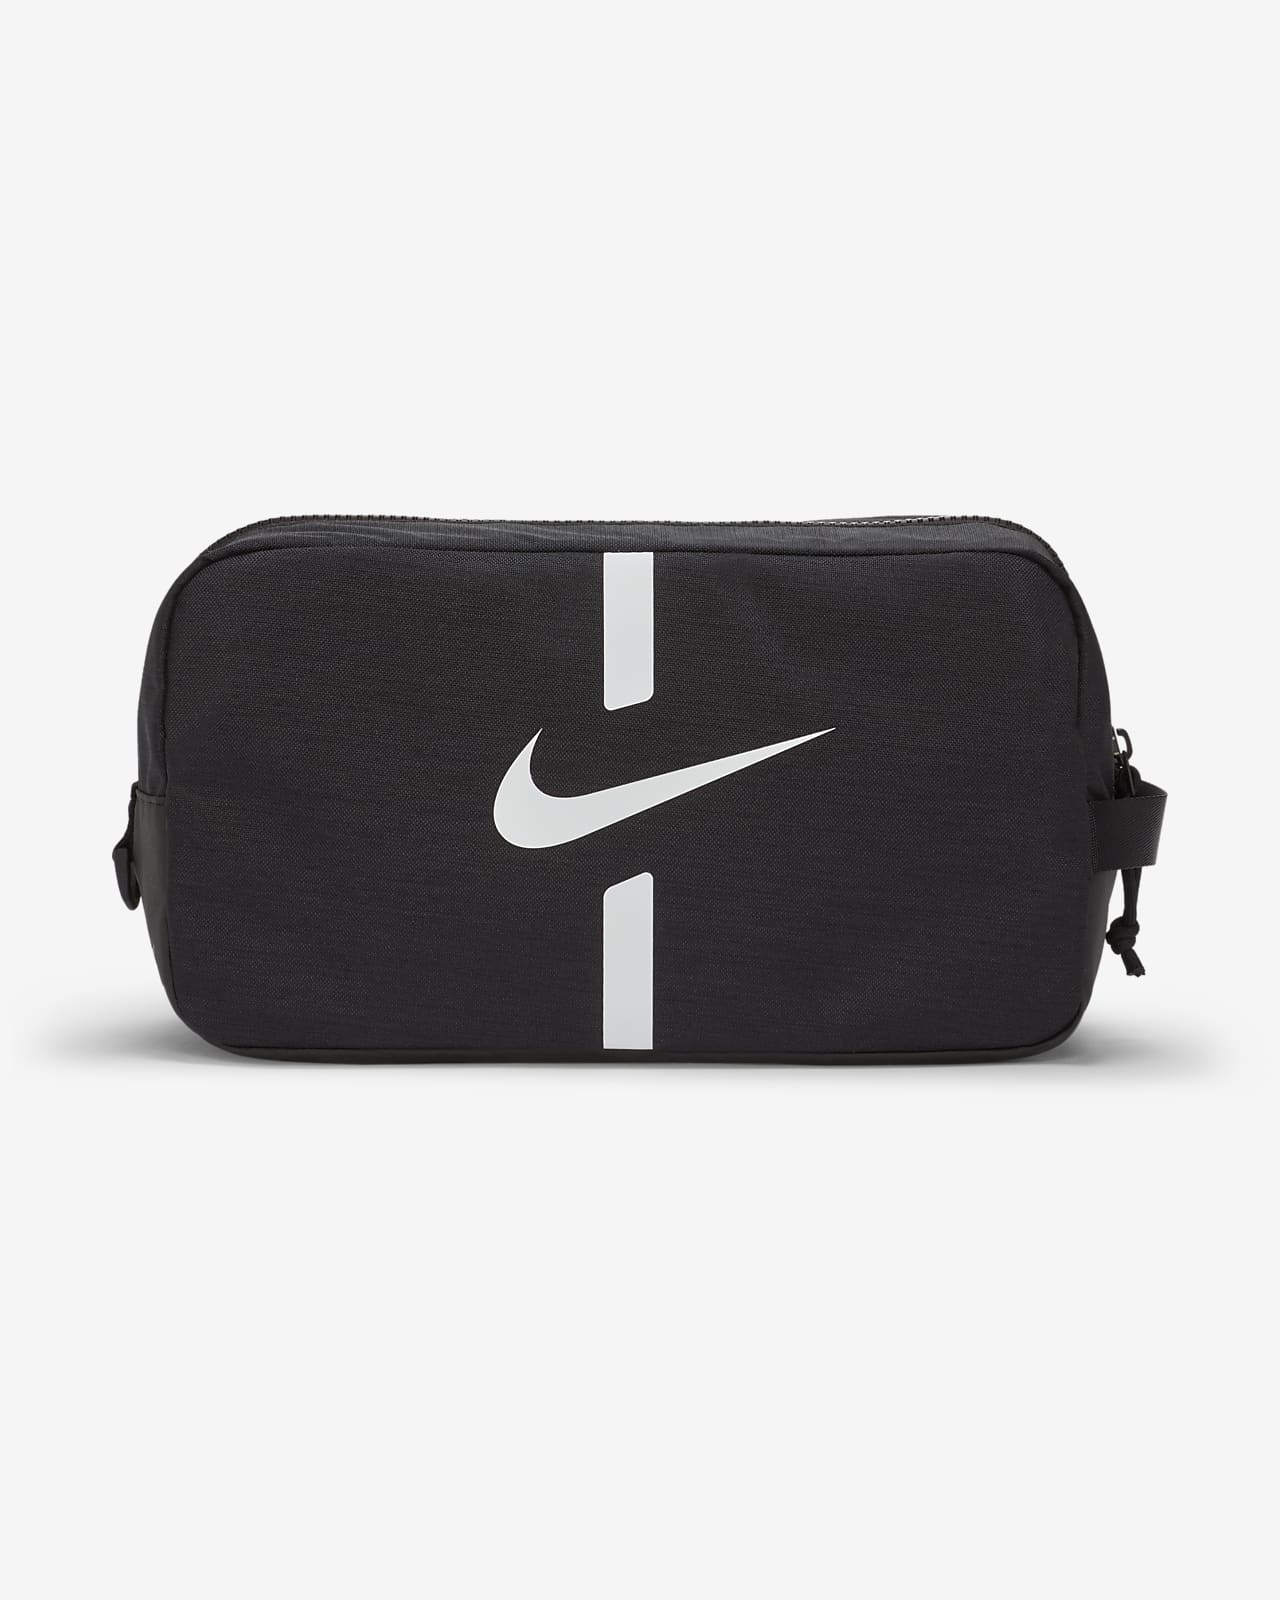 Nike Academy Football Bag. Nike SA